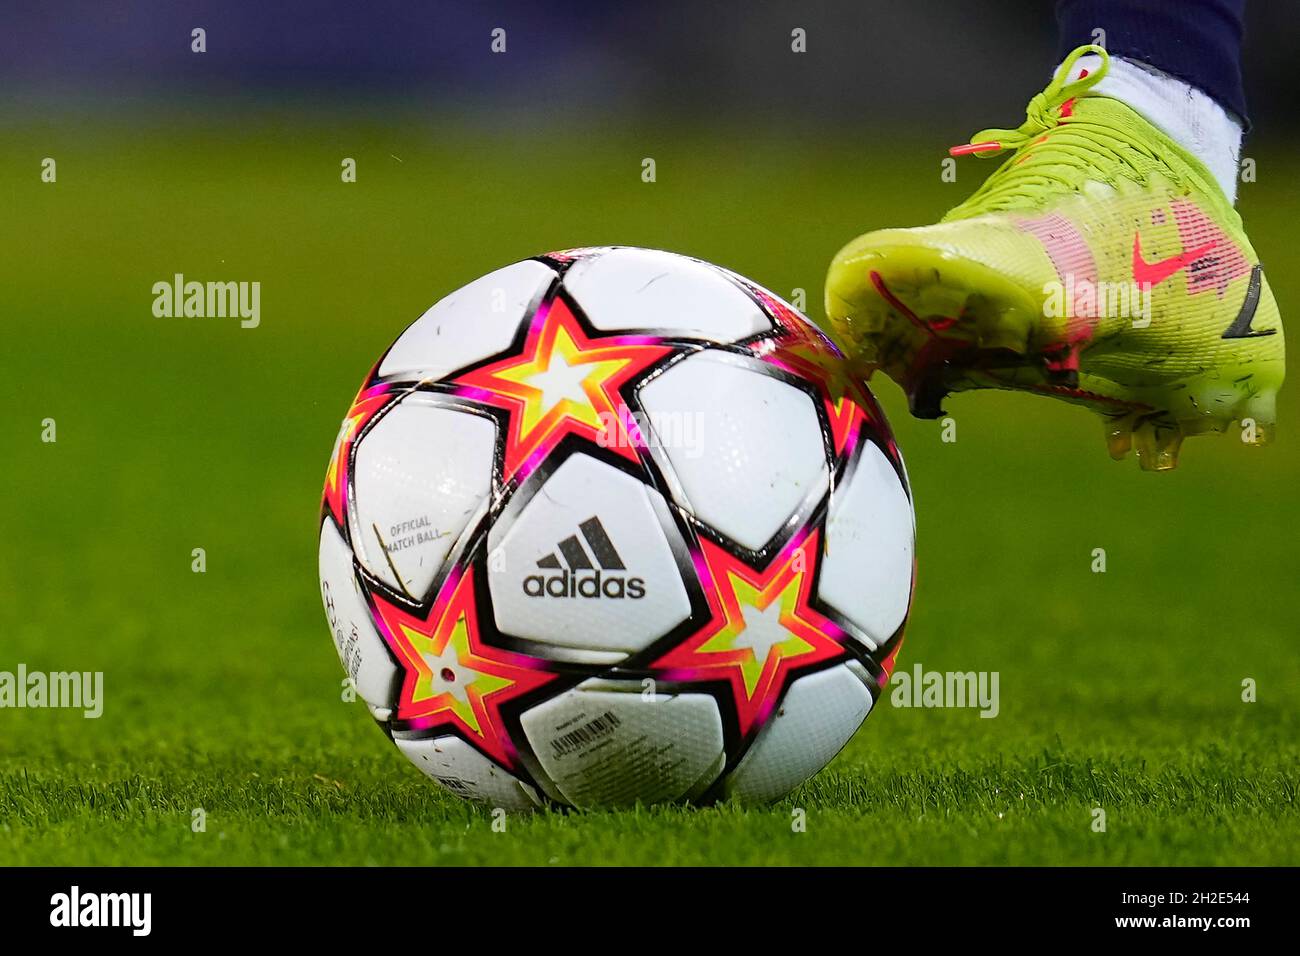 Nublado Rápido recepción Las botas Nike de Ansu Fati y el balón oficial de la UEFA Champions League  Adidas durante el partido de la UEFA Champions League entre el FC Barcelona  y el FC Dynamo